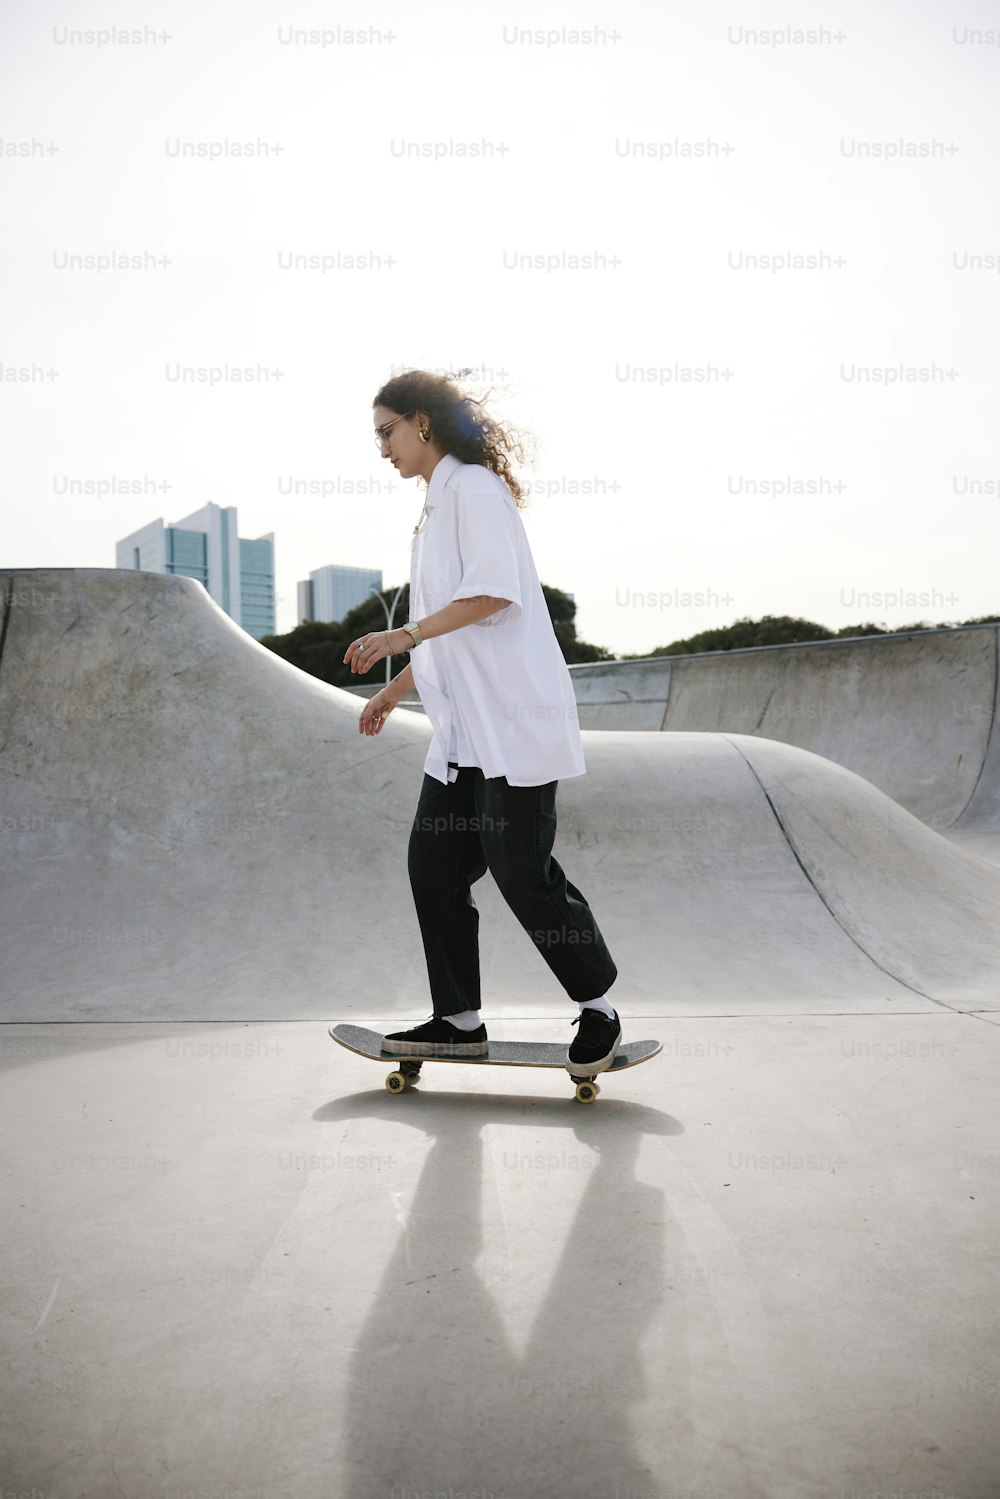 una persona che cavalca uno skateboard su una rampa